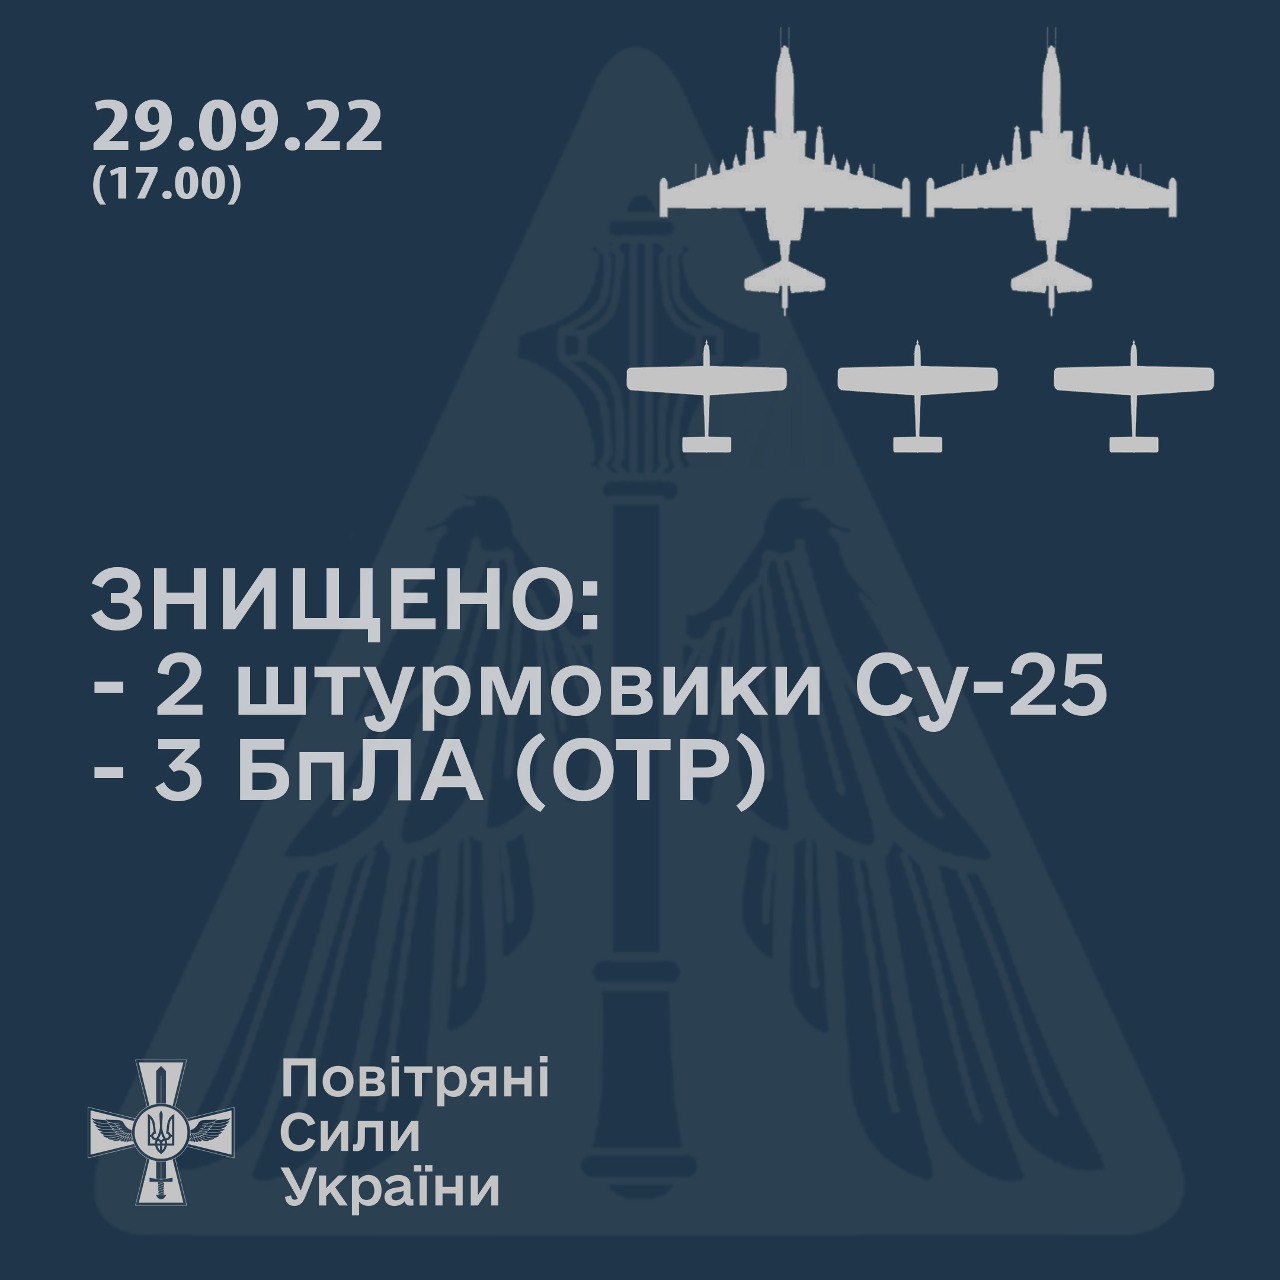 Командование Воздушных сил Украины сообщает о том, что сегодня около 17.00 часов в Баштанском районе Николаевской области были сбиты два российских штурмовика Су-25